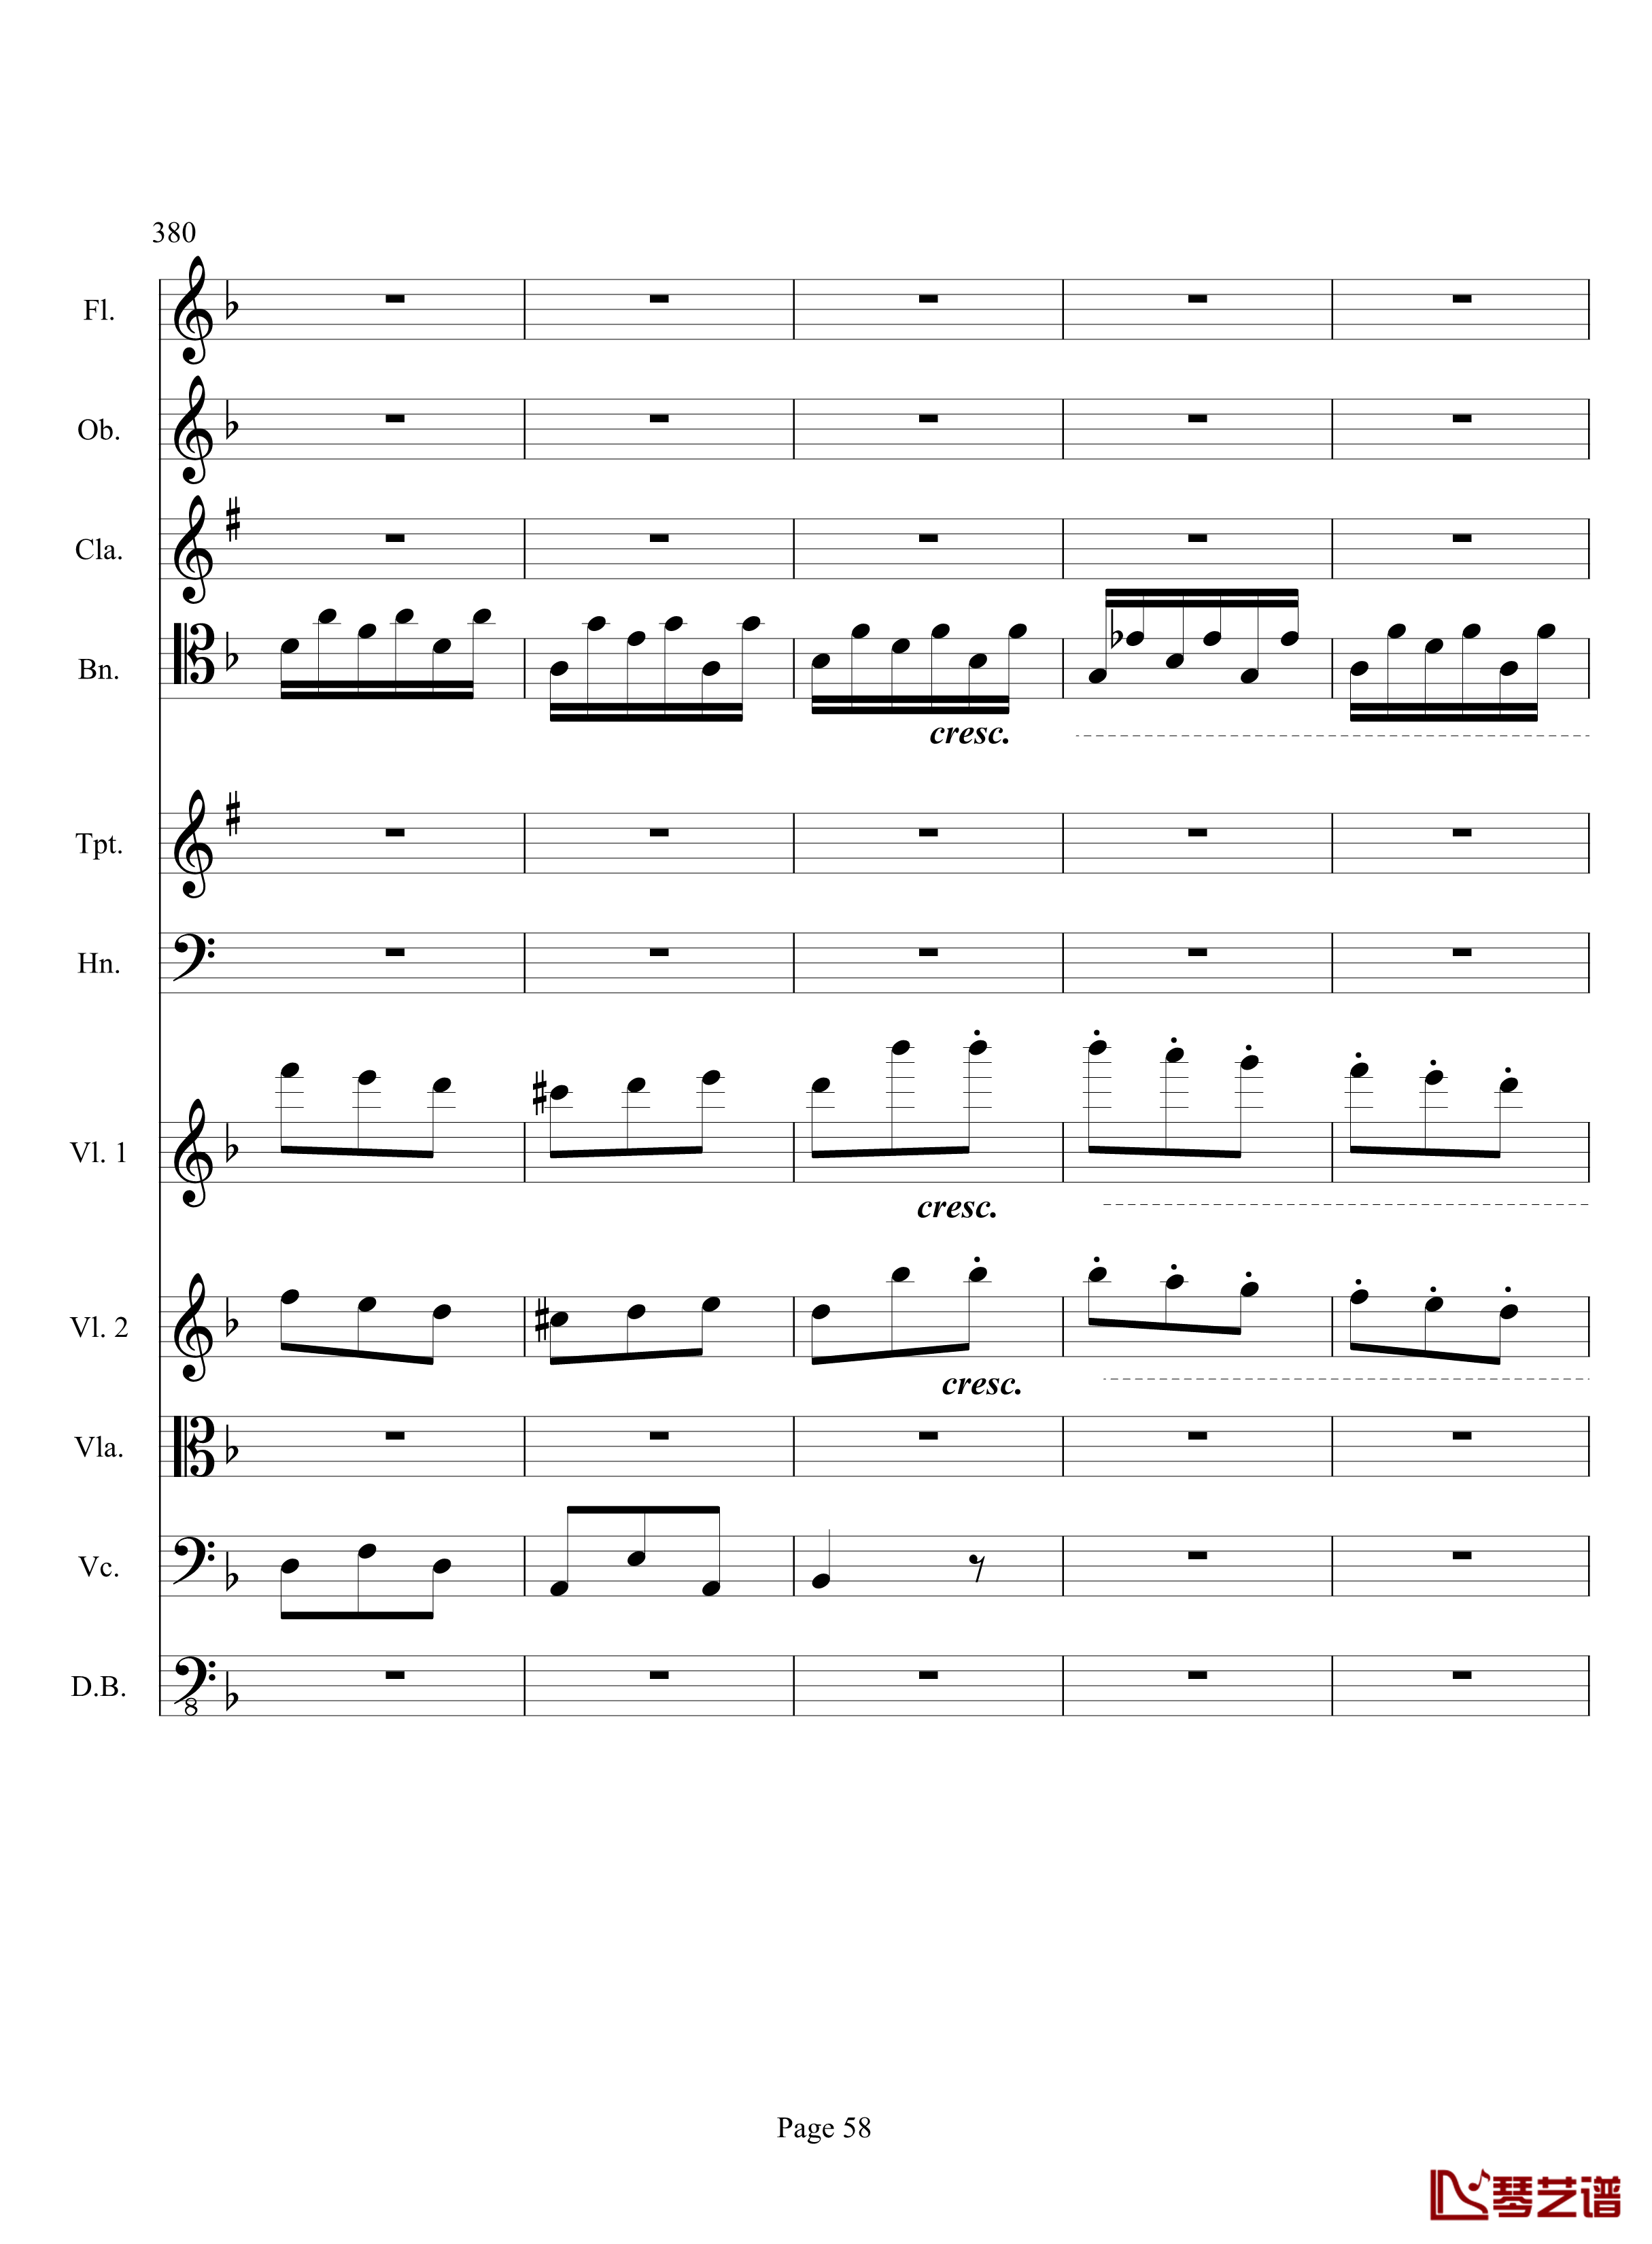 奏鸣曲之交响钢琴谱-第17首-Ⅲ-贝多芬-beethoven58